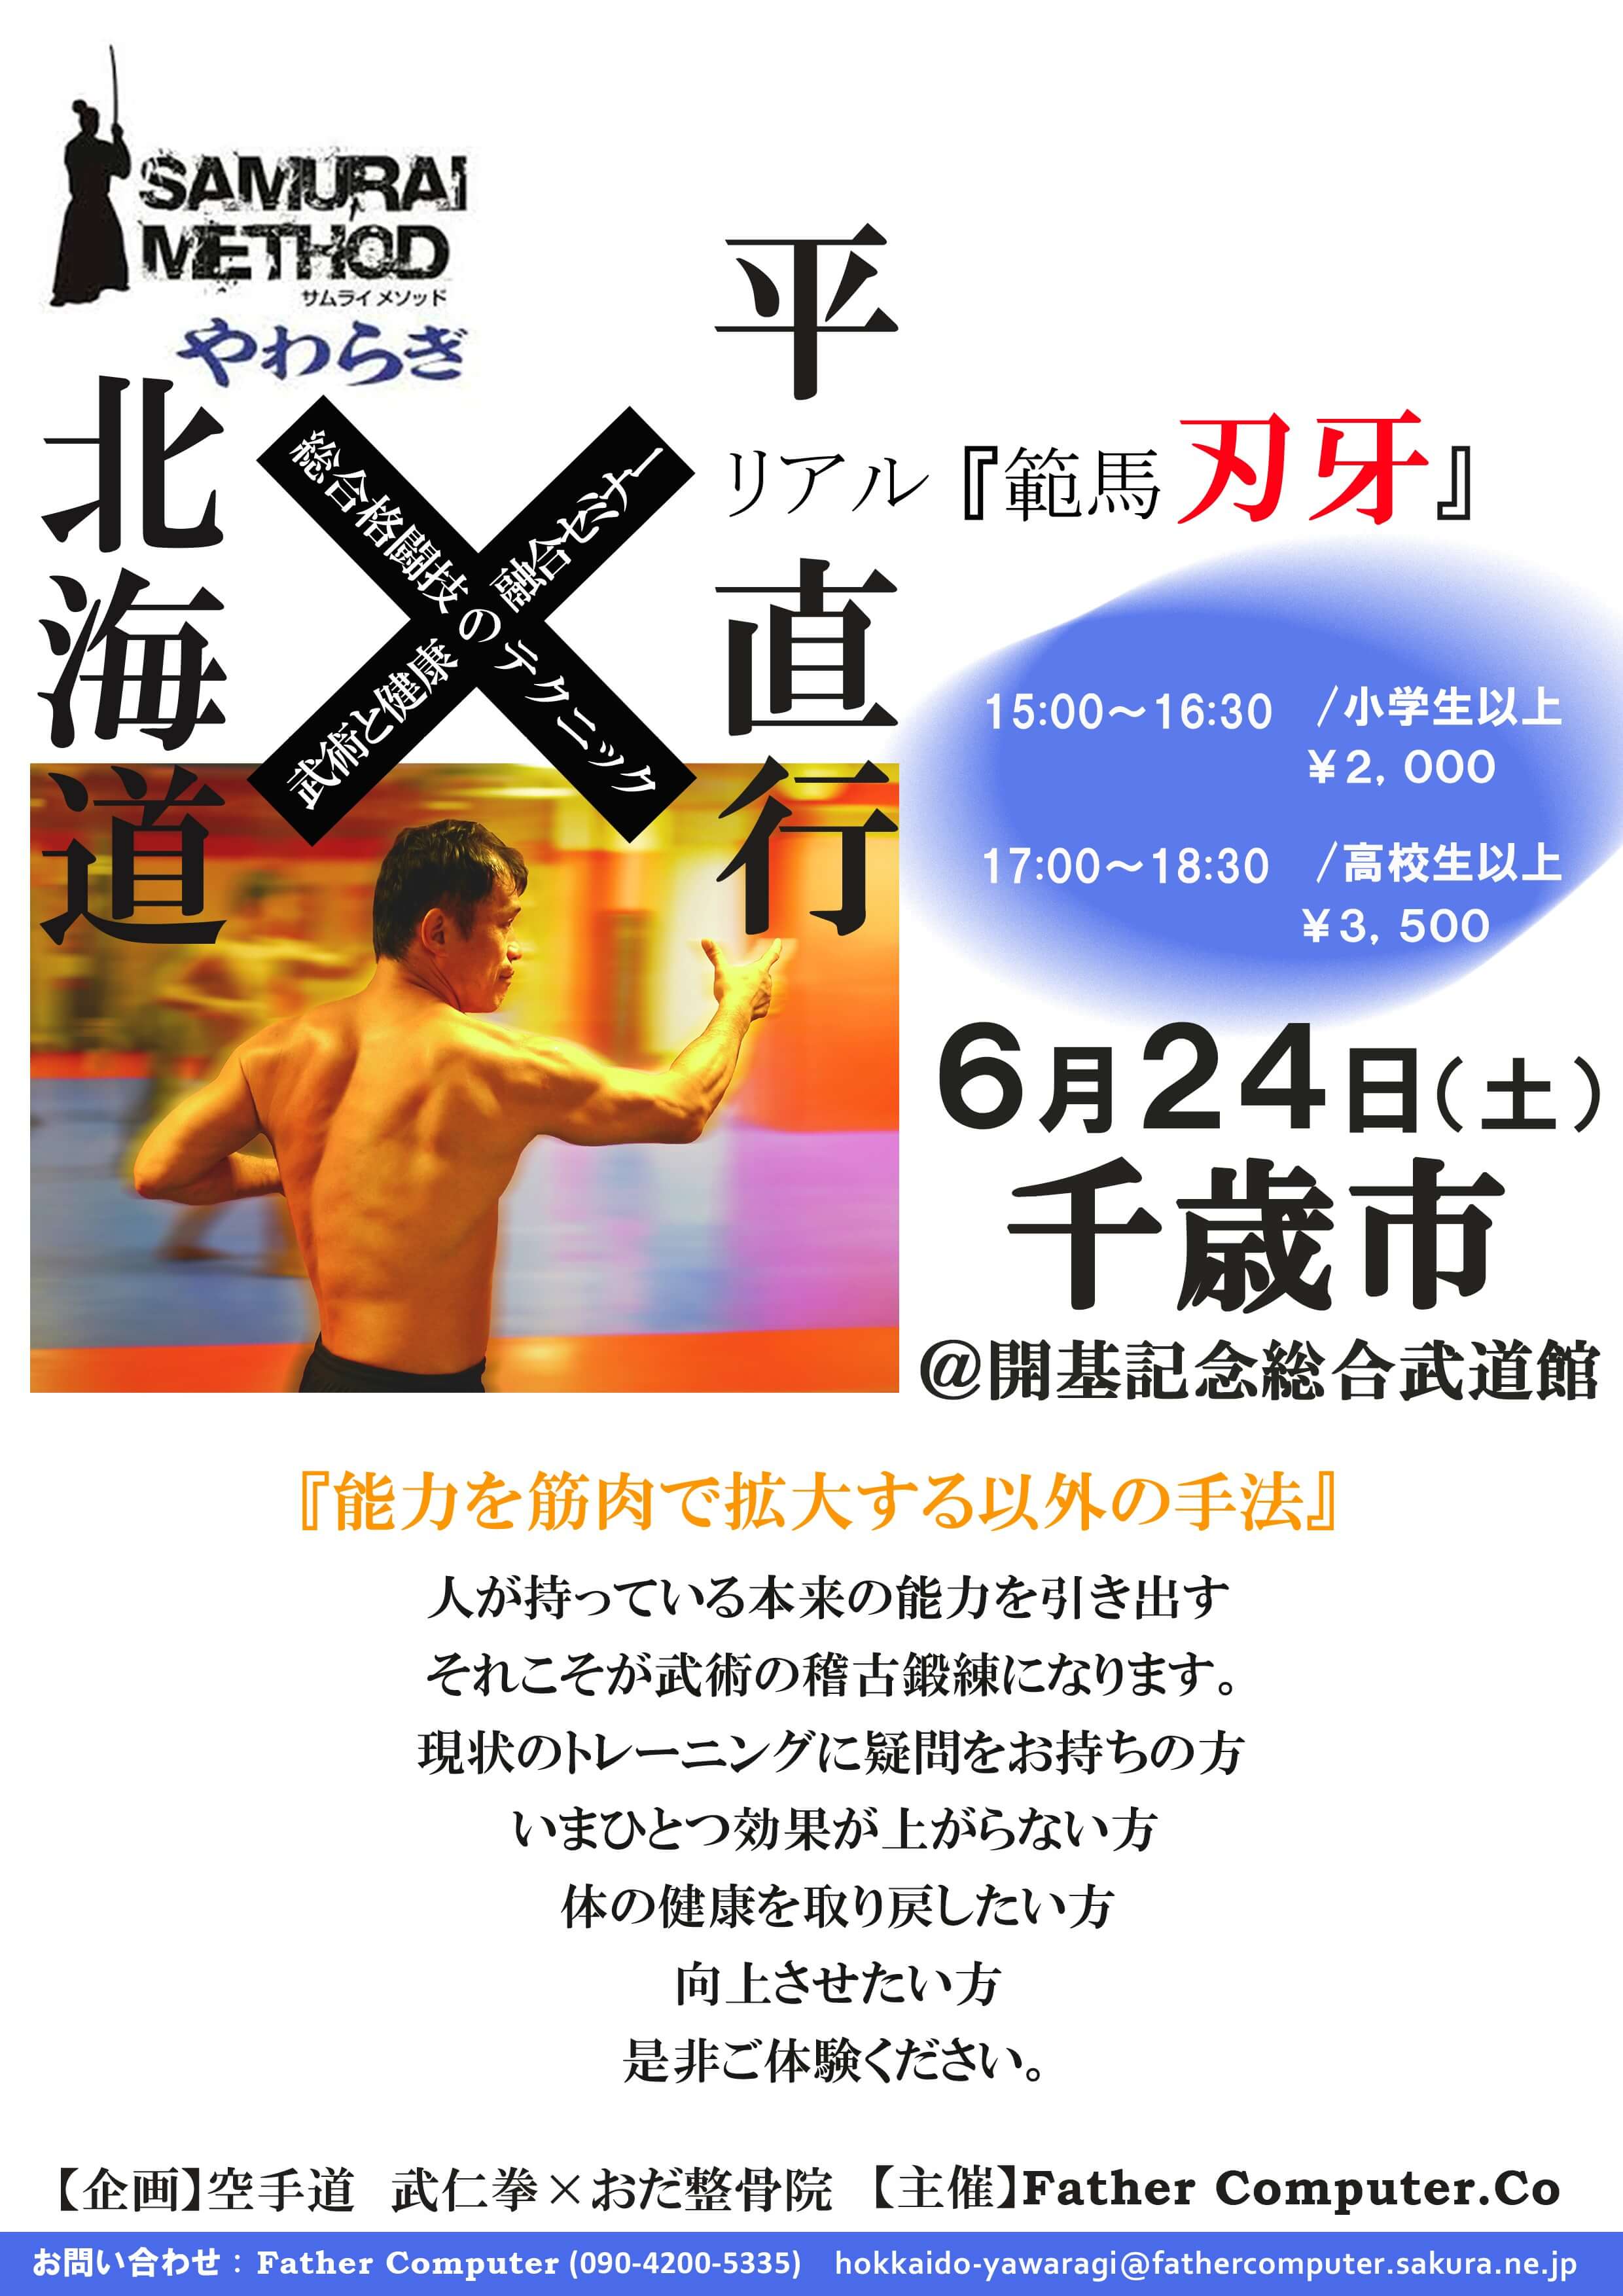 マンガ「刃牙」のモデルとなった平 直行 先生が北海道で初公演 公演ポスター